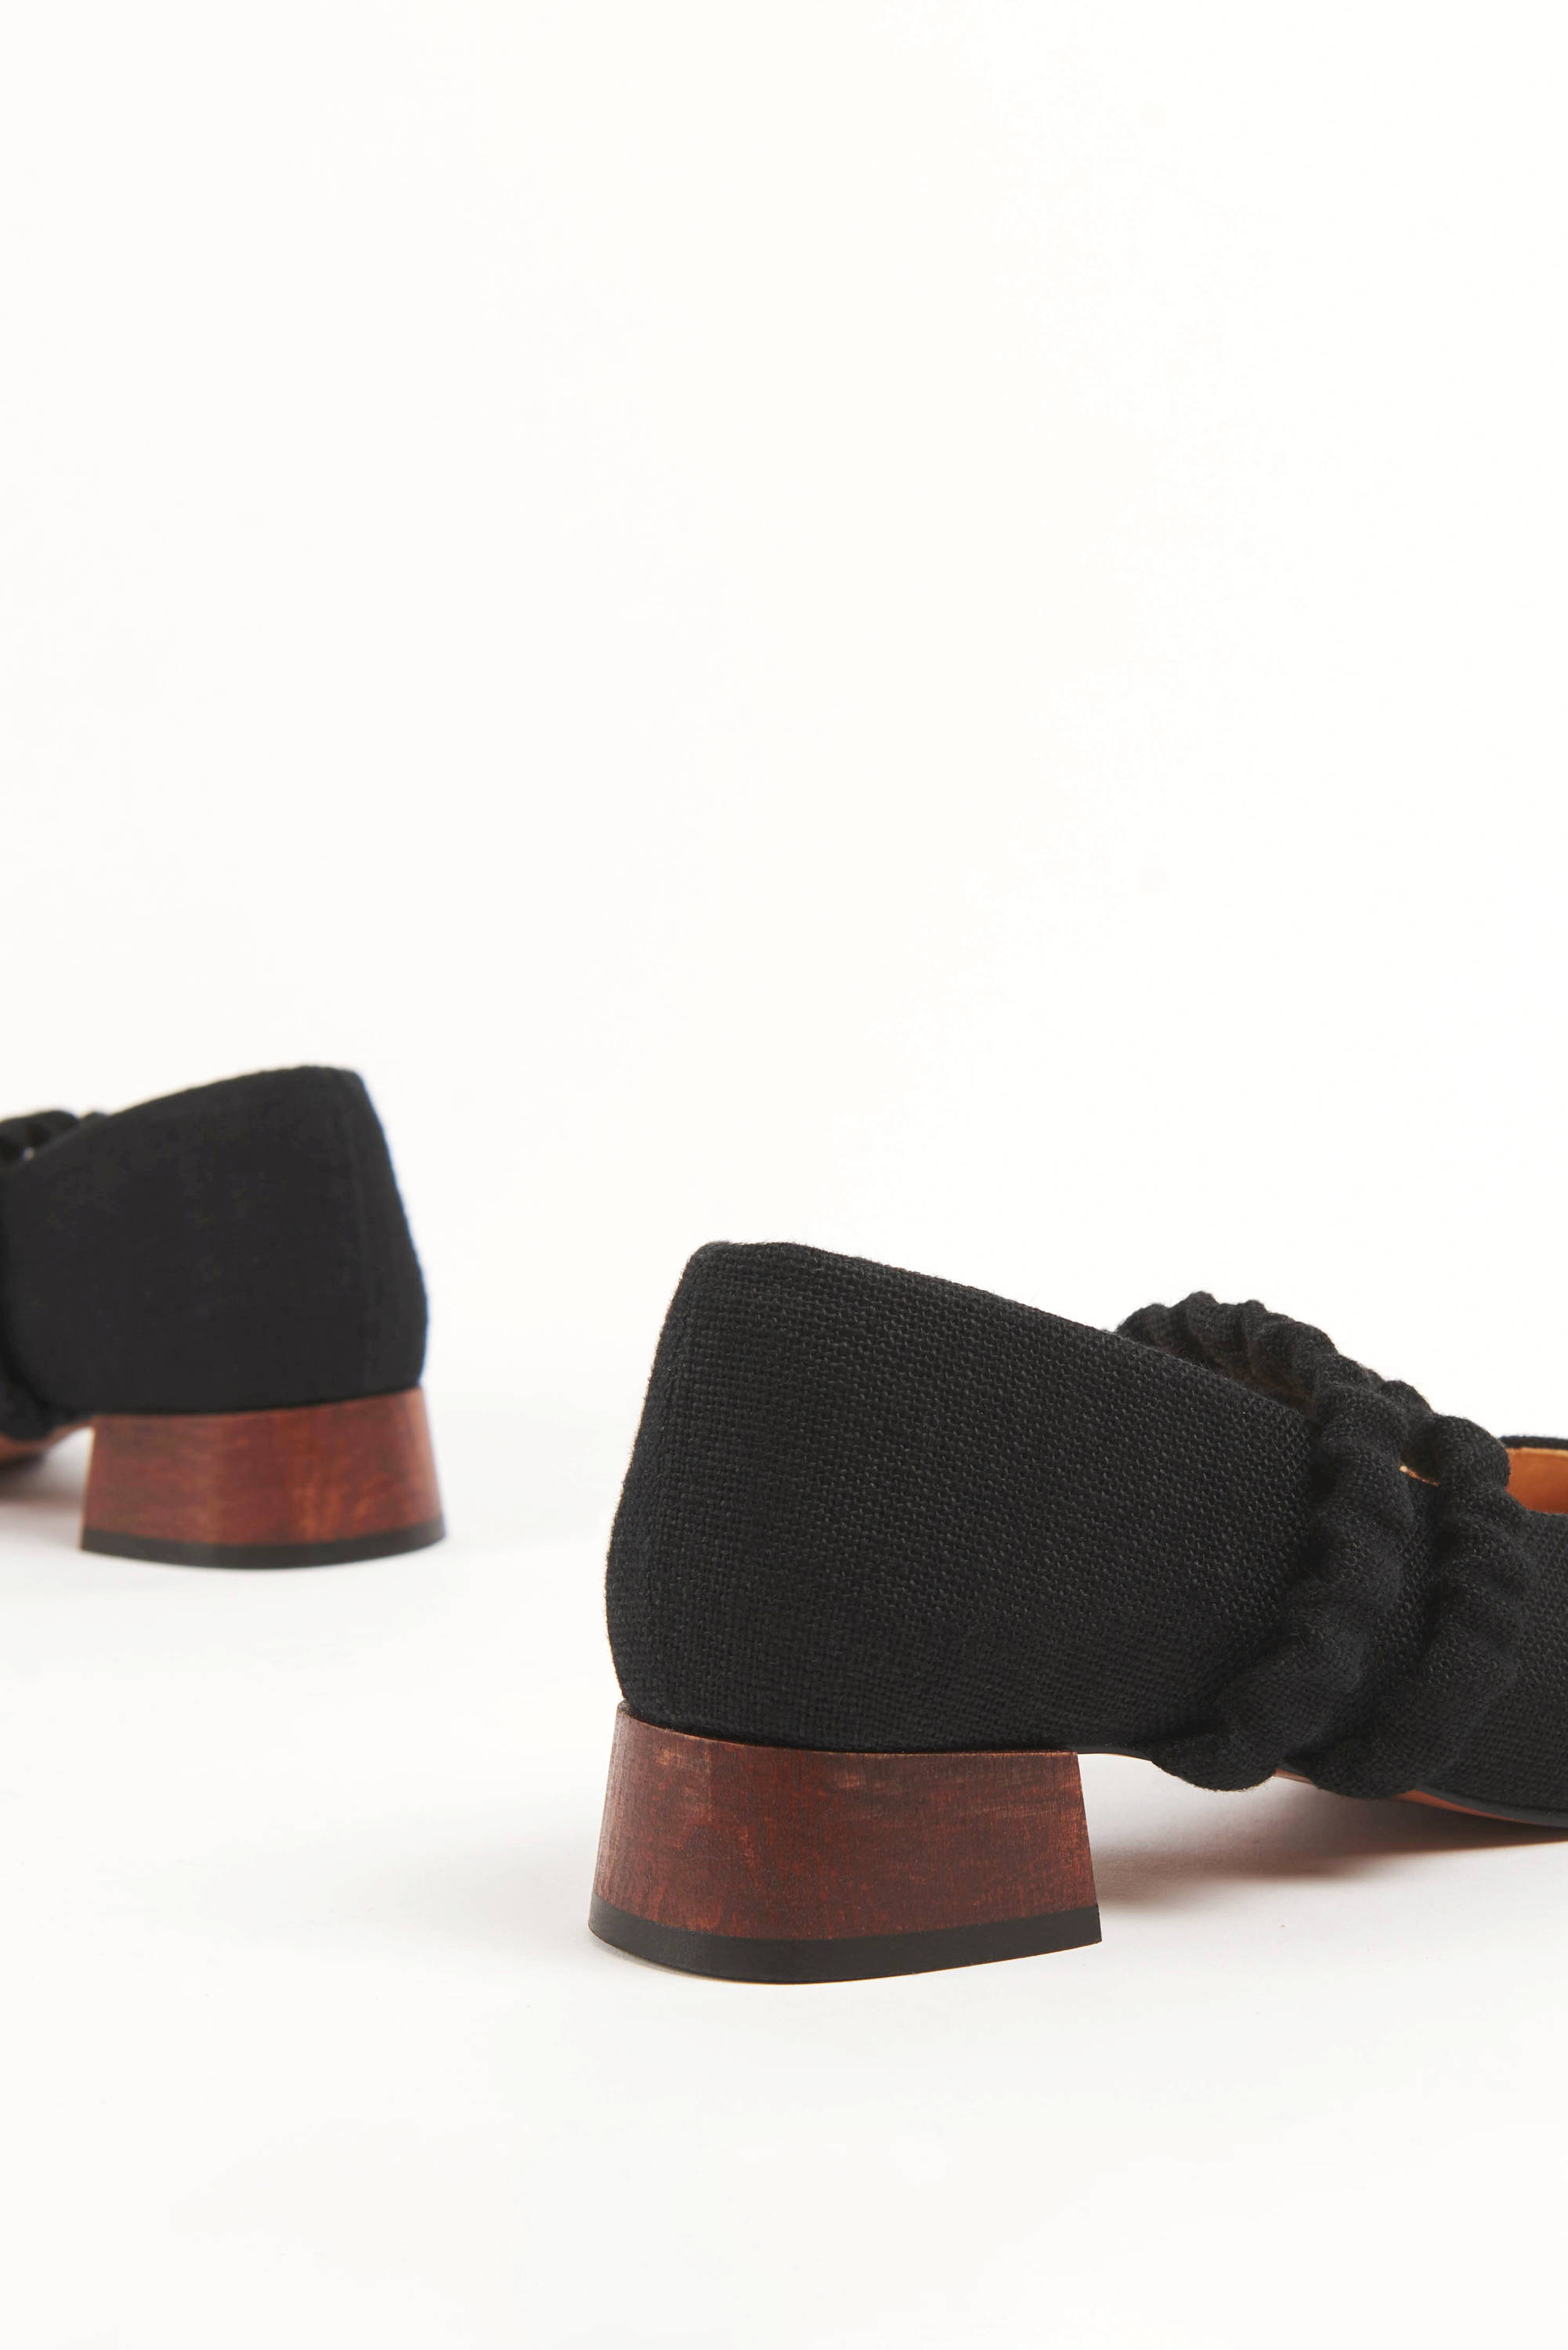 Closeup of Vandrelaar Ruth mary-jane pumps in black linen with elegant block wooden heel